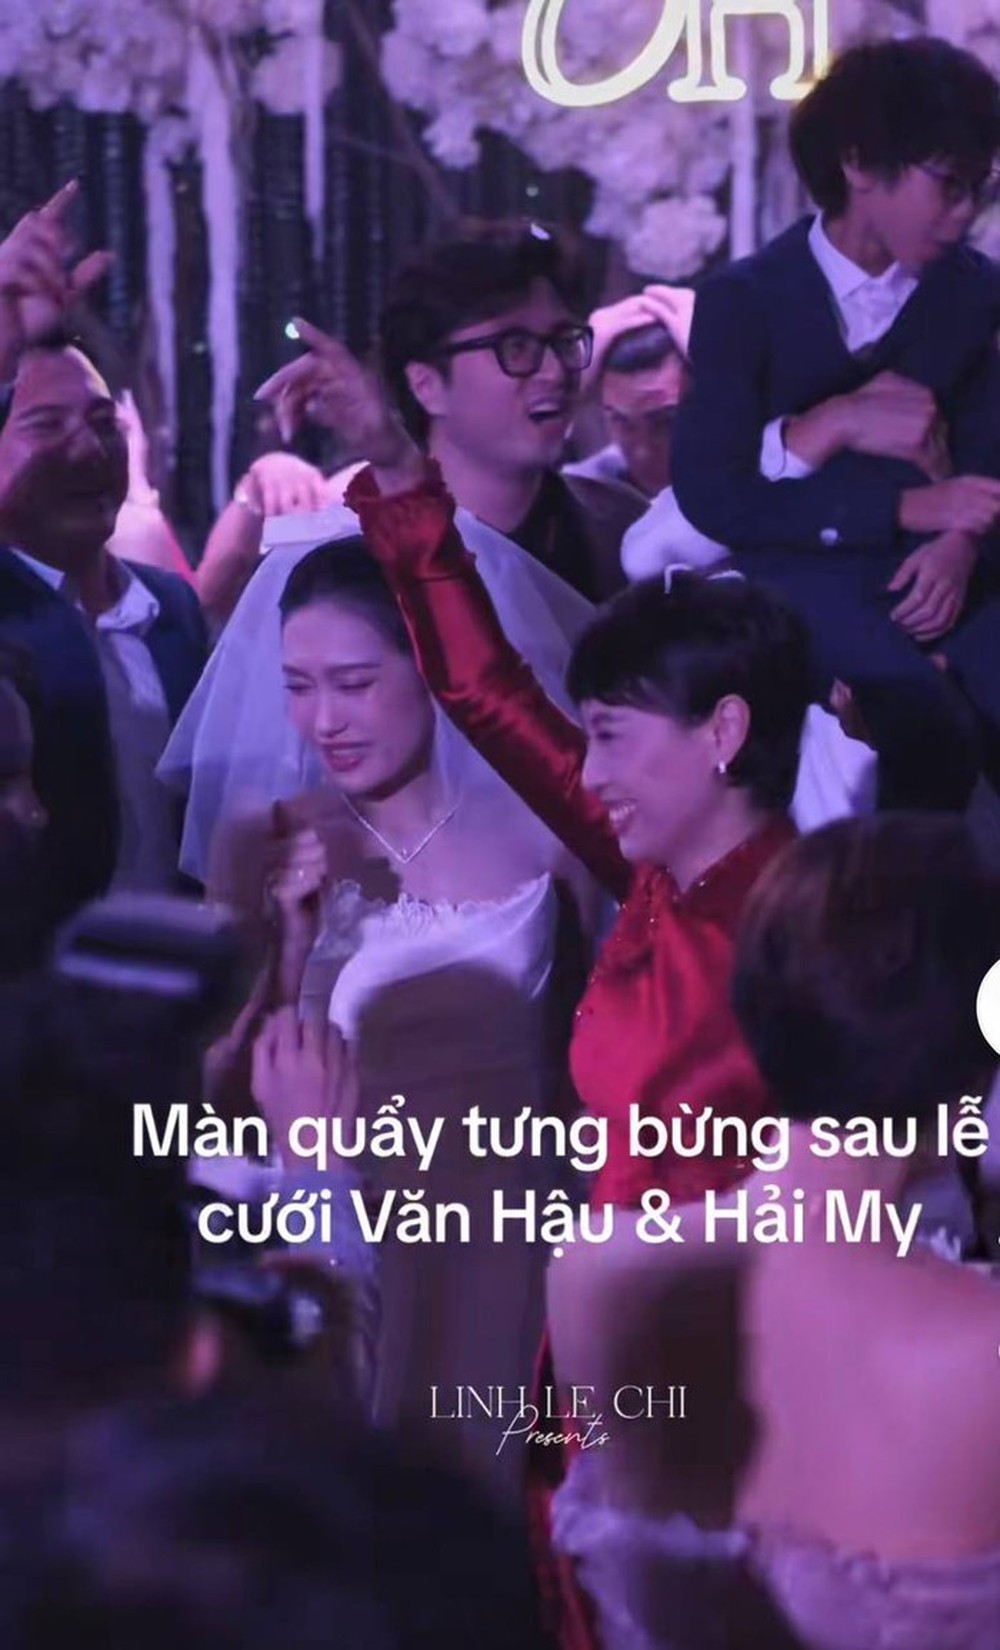 Hai thông gia nhà Văn Hậu và Hải My nhận cơn mưa lời khen bởi những sự tinh tế từ khâu tổ chức tiệc cưới - Ảnh 2.